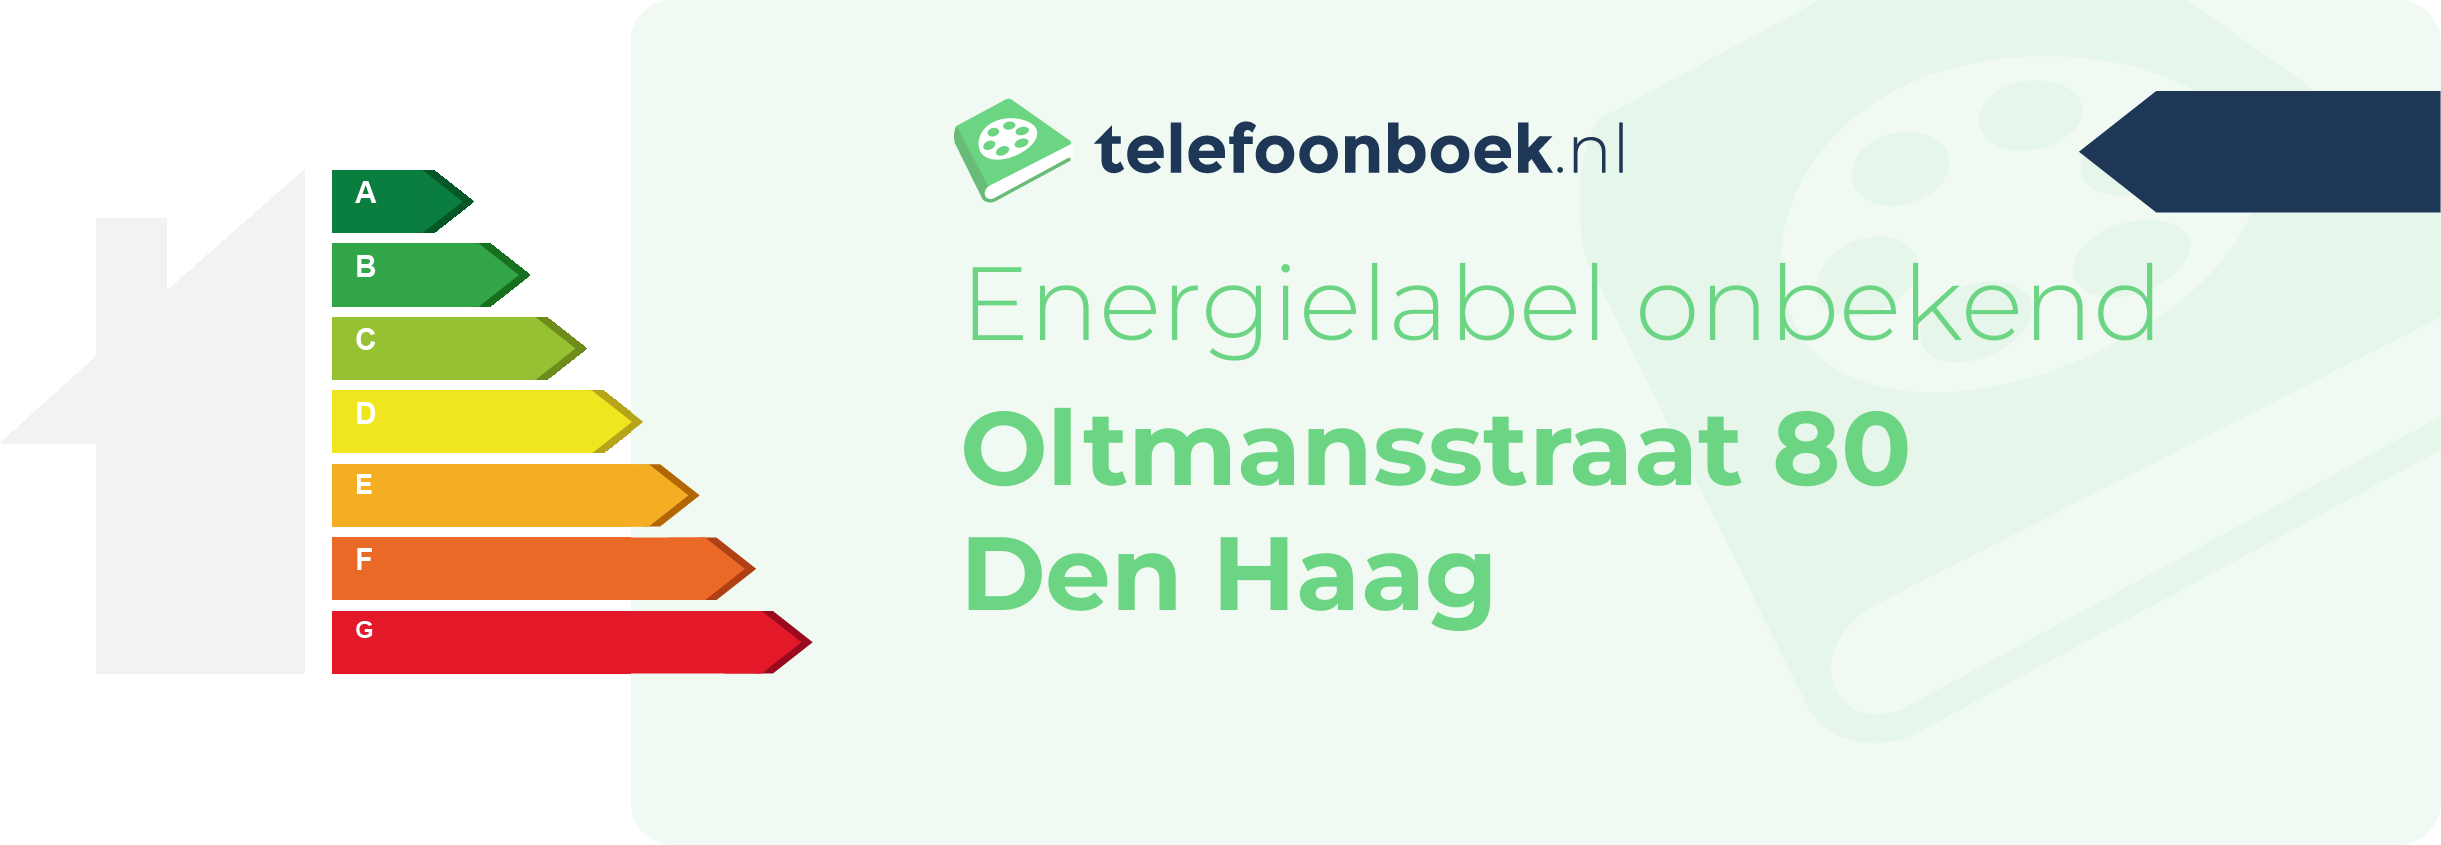 Energielabel Oltmansstraat 80 Den Haag